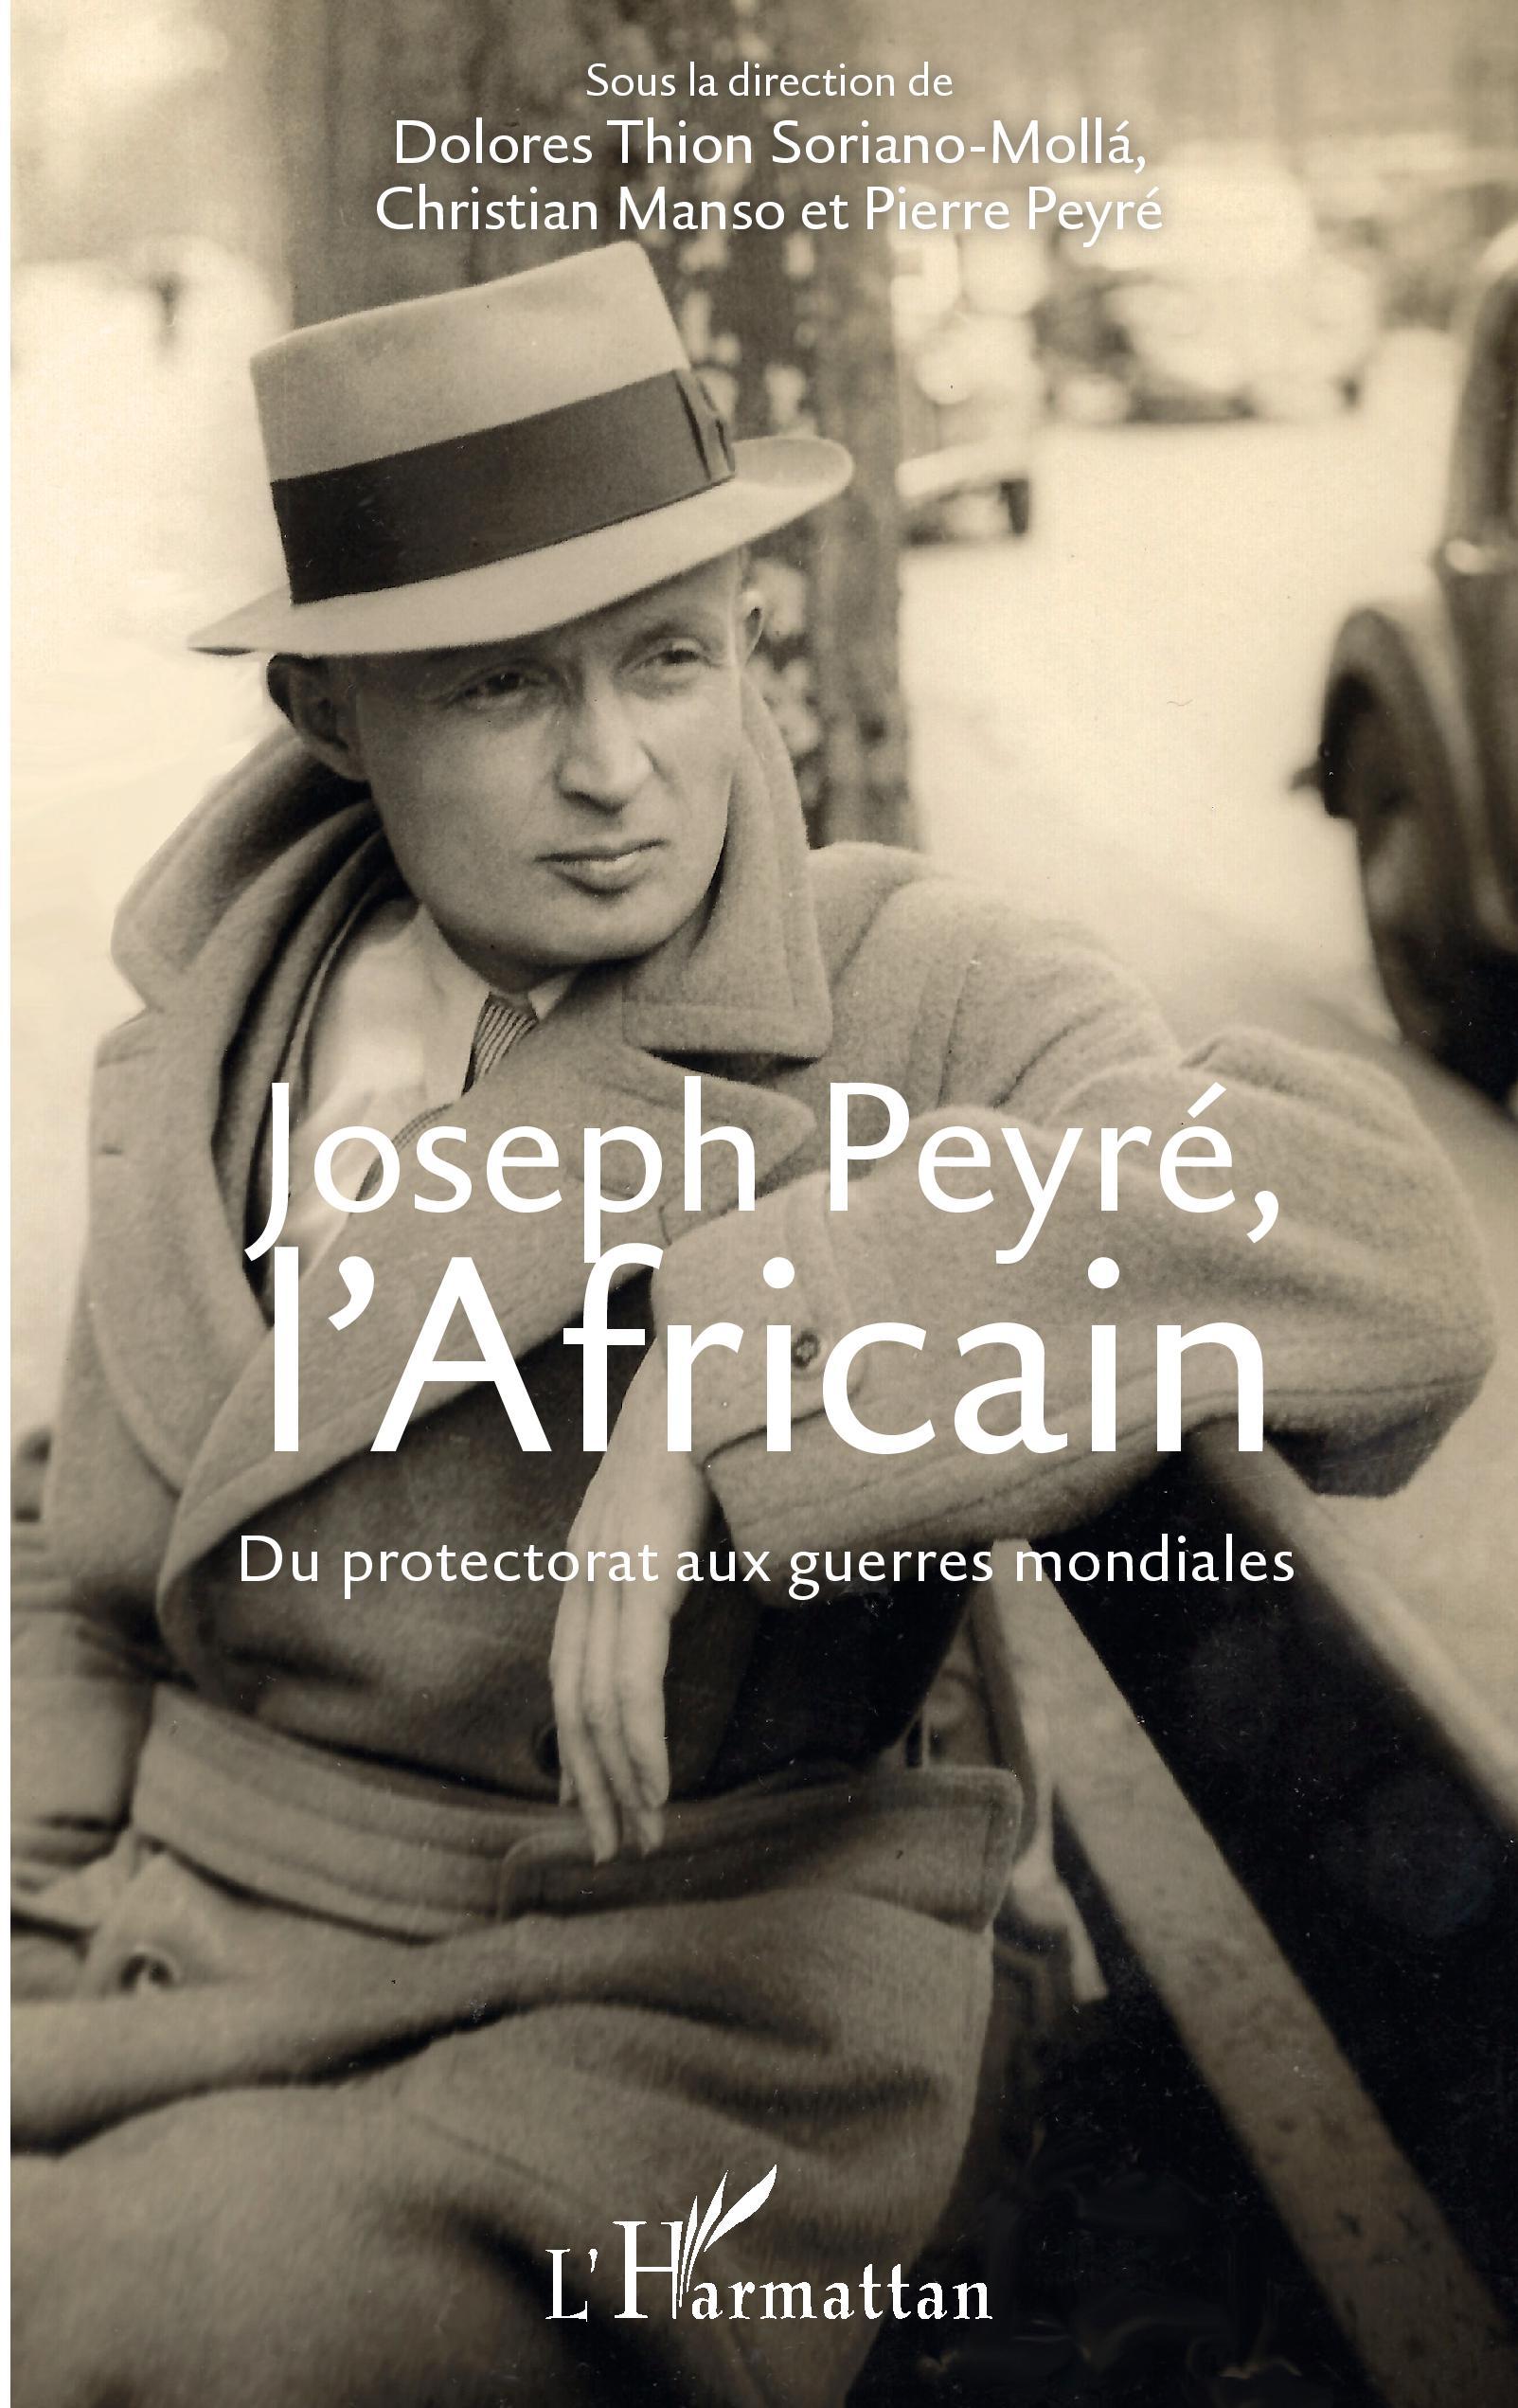 Joseph Peyré, l Africain - Thion Soriano-Mollà, Dolores Manso, Christian Peyré, Pierre